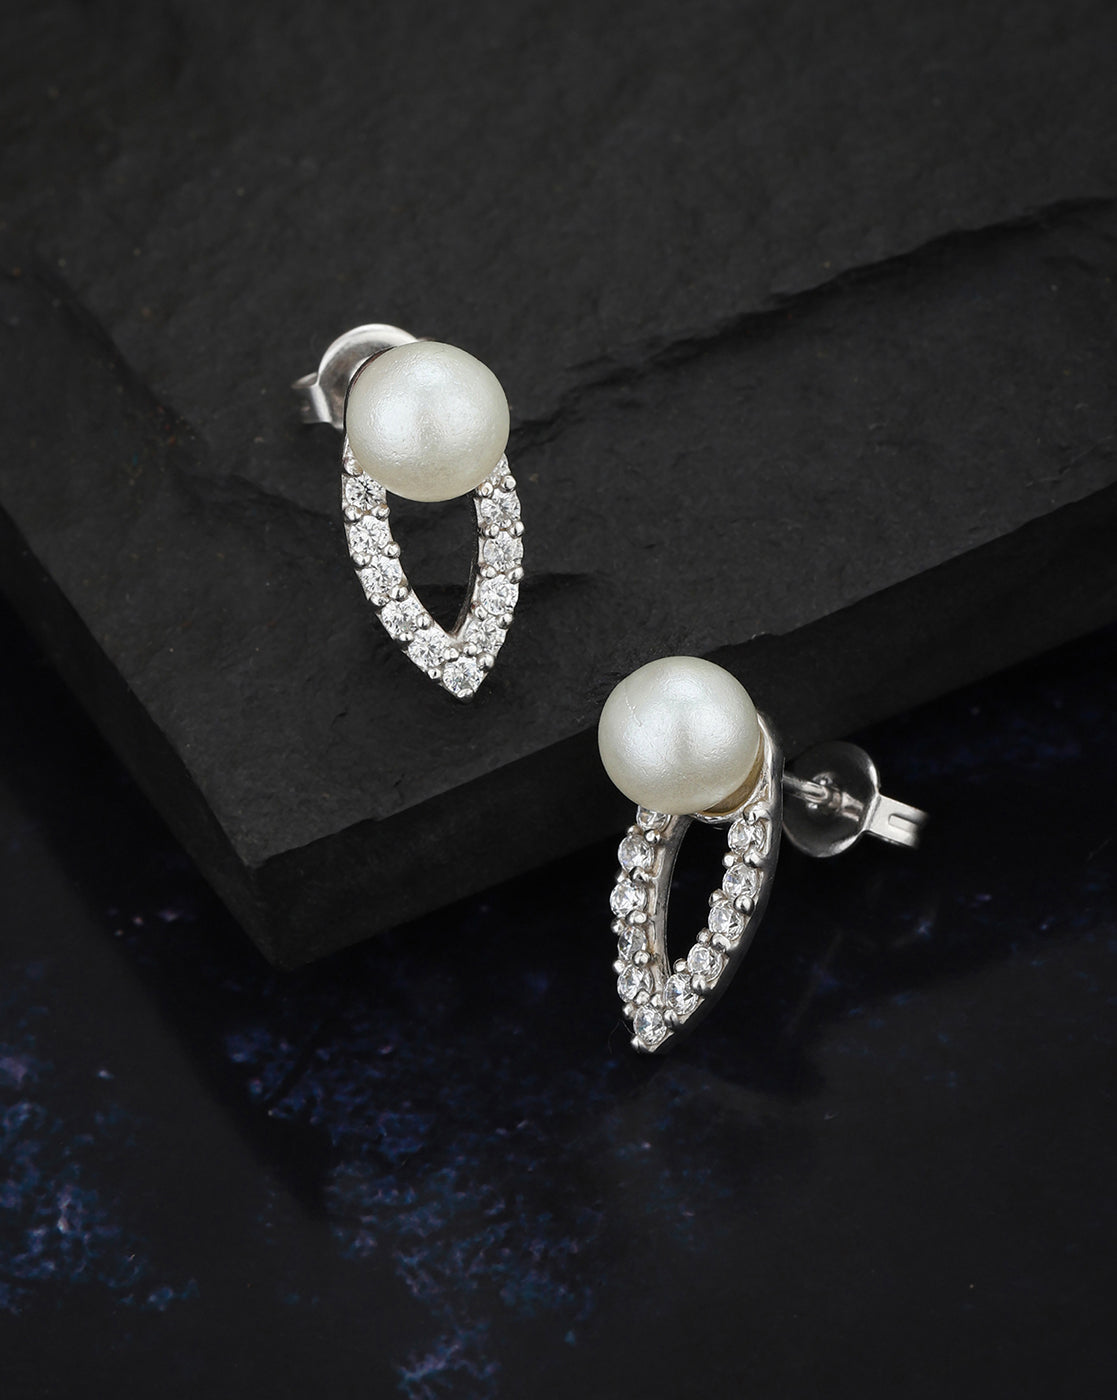 Buy White Pearl Stud Earrings White Pearl Earrings Small Pearl Online in  India  Etsy